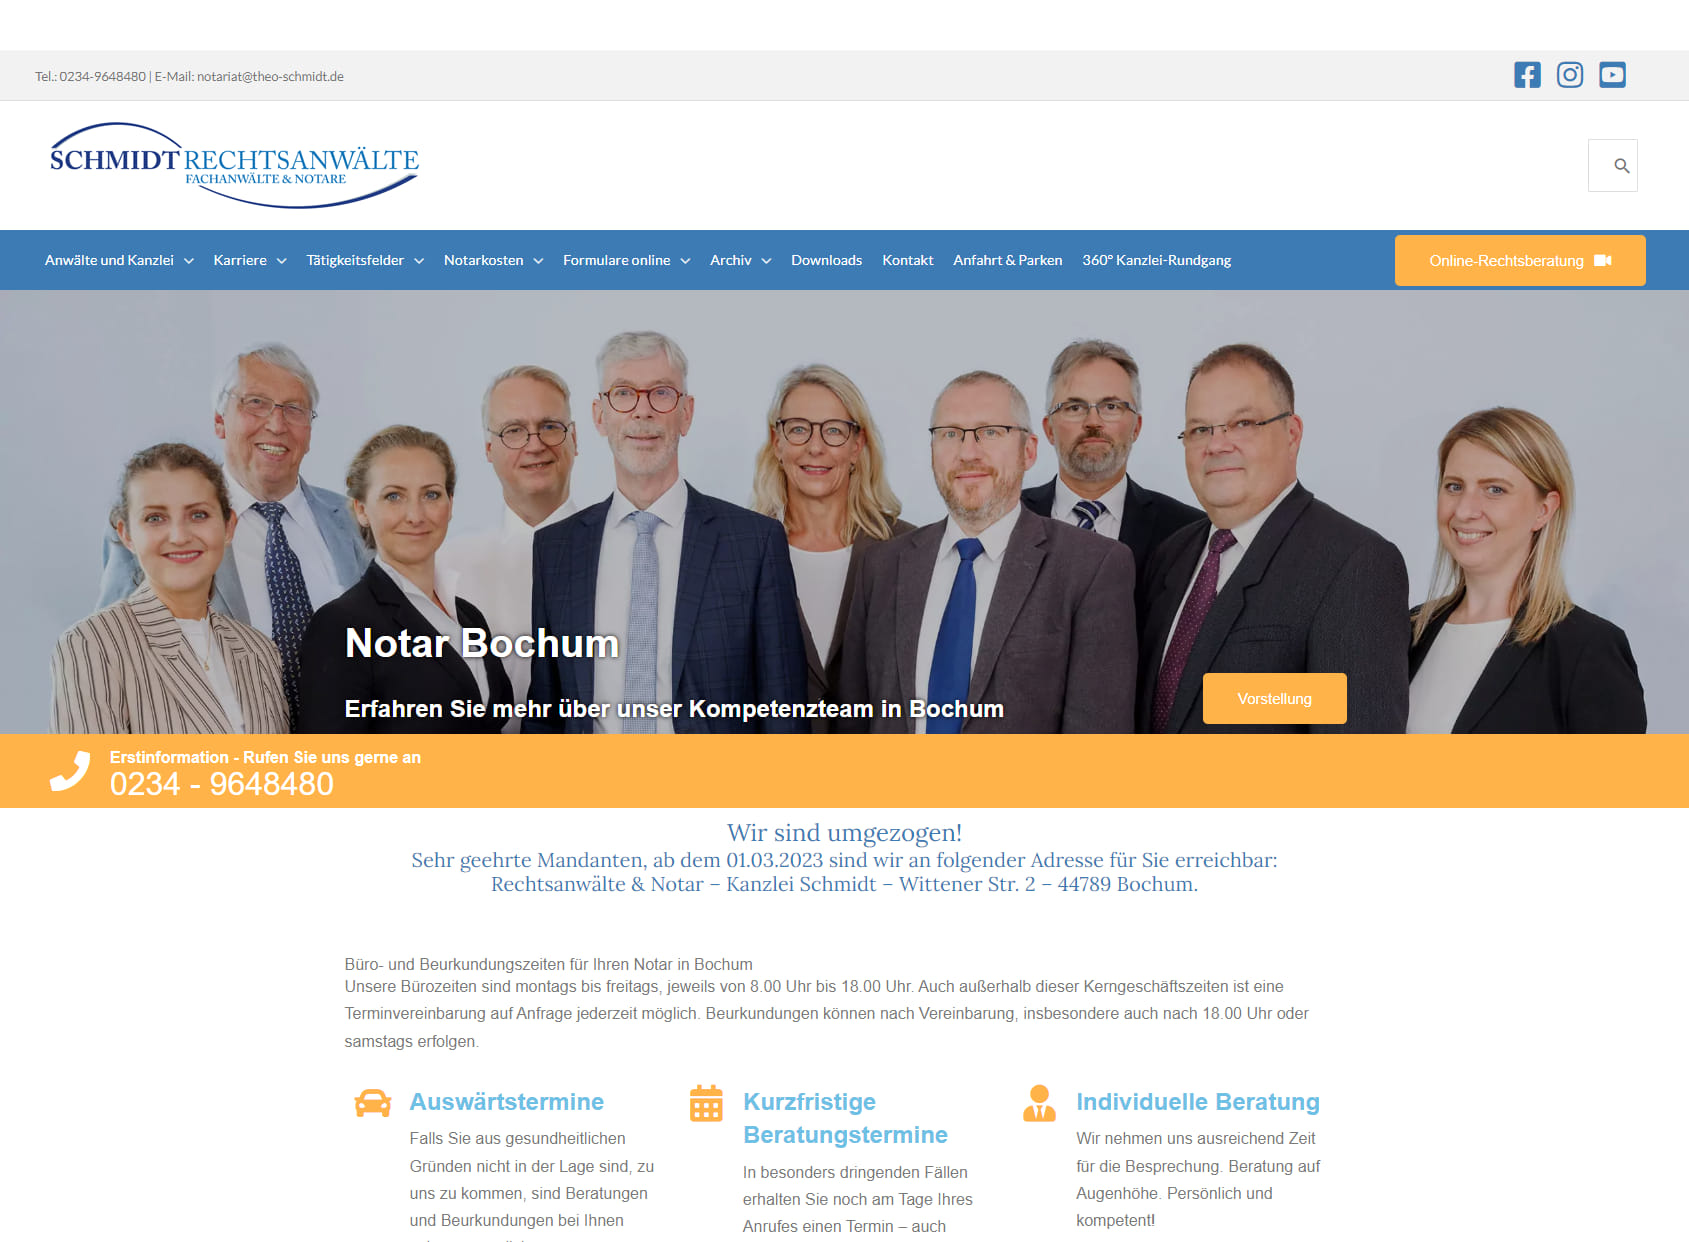 Notar Bochum | Rechtsanwälte & Notare | Fachanwalt für Familienrecht, Erbrecht, Steuerrecht